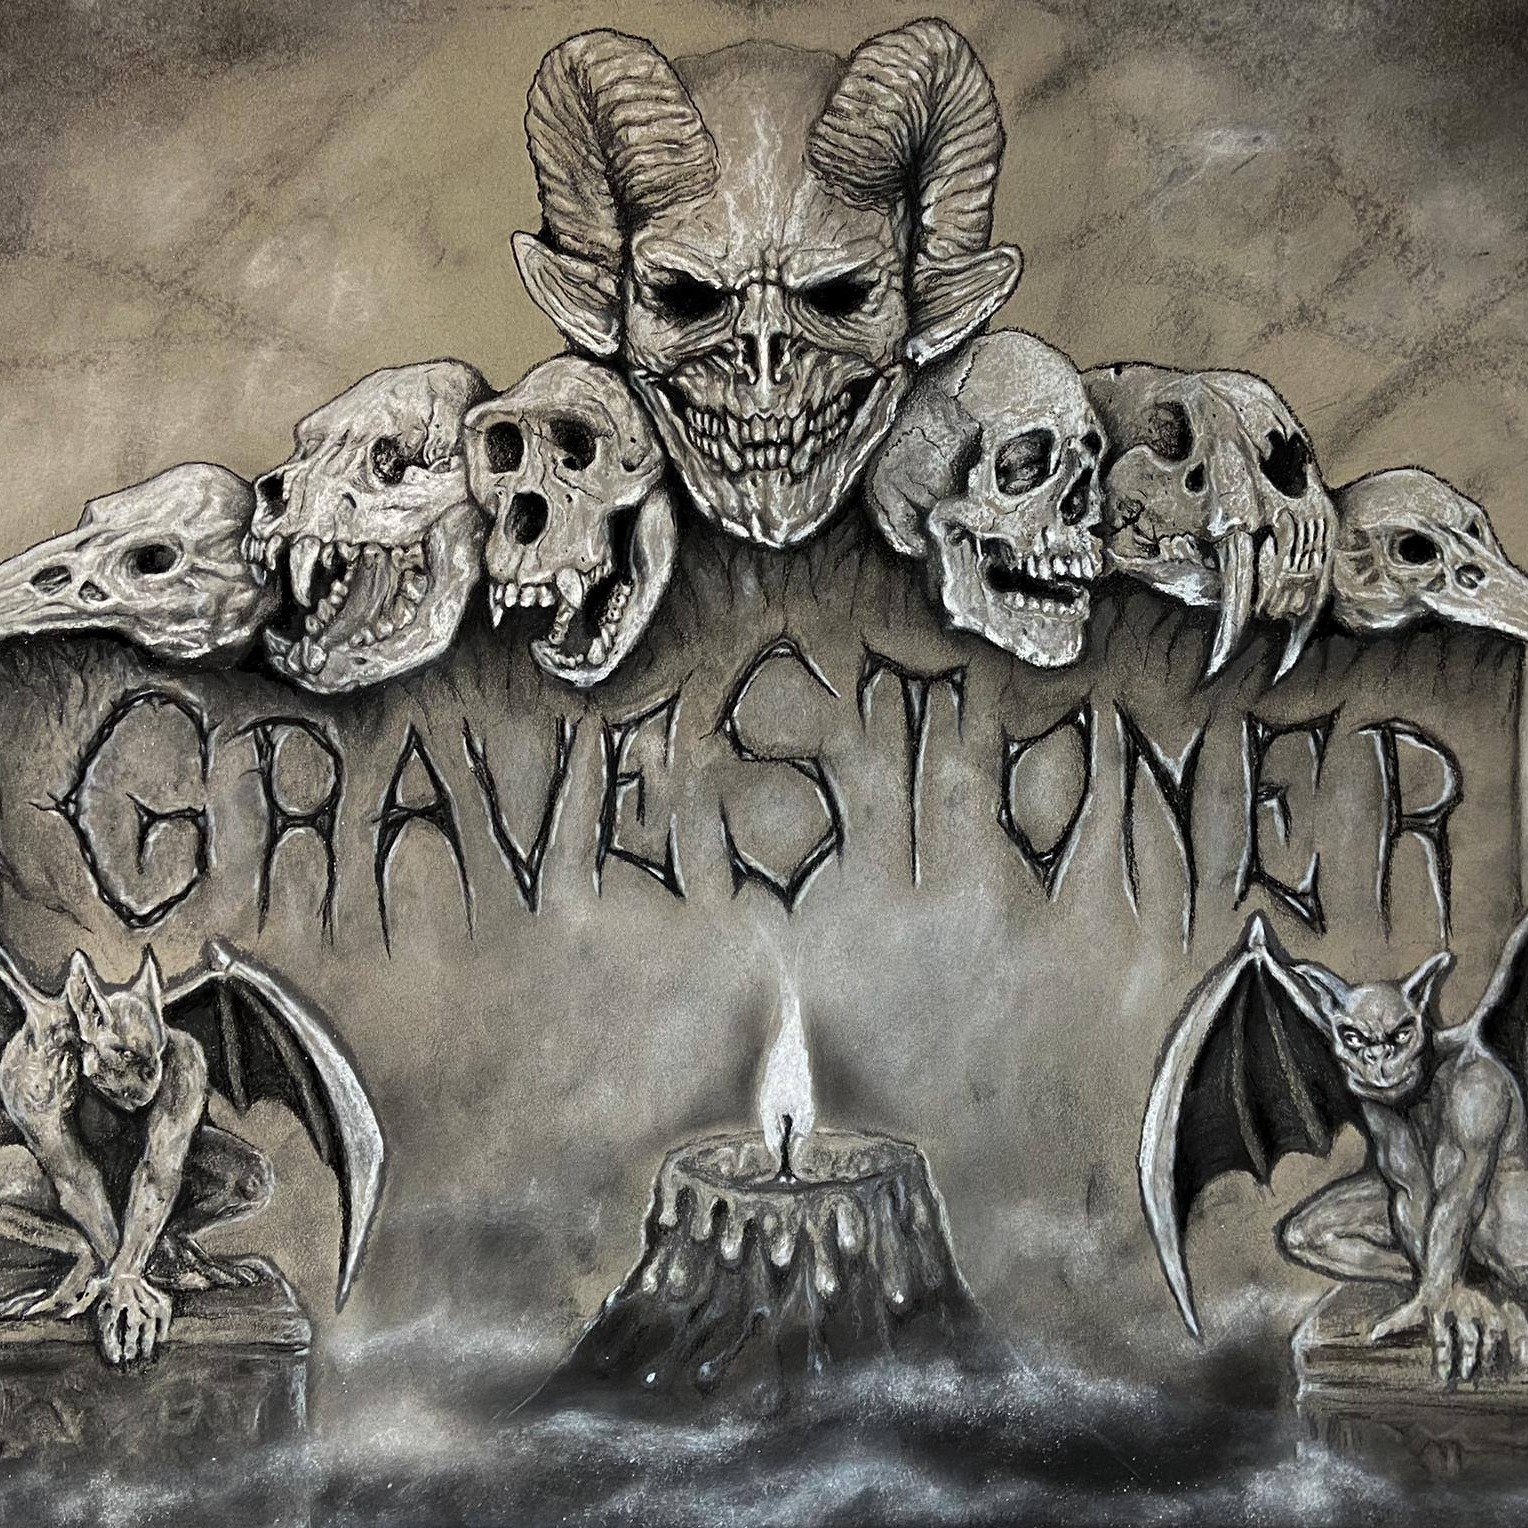 Reseña : Gravestoner – Primer EP “Gravestoner”